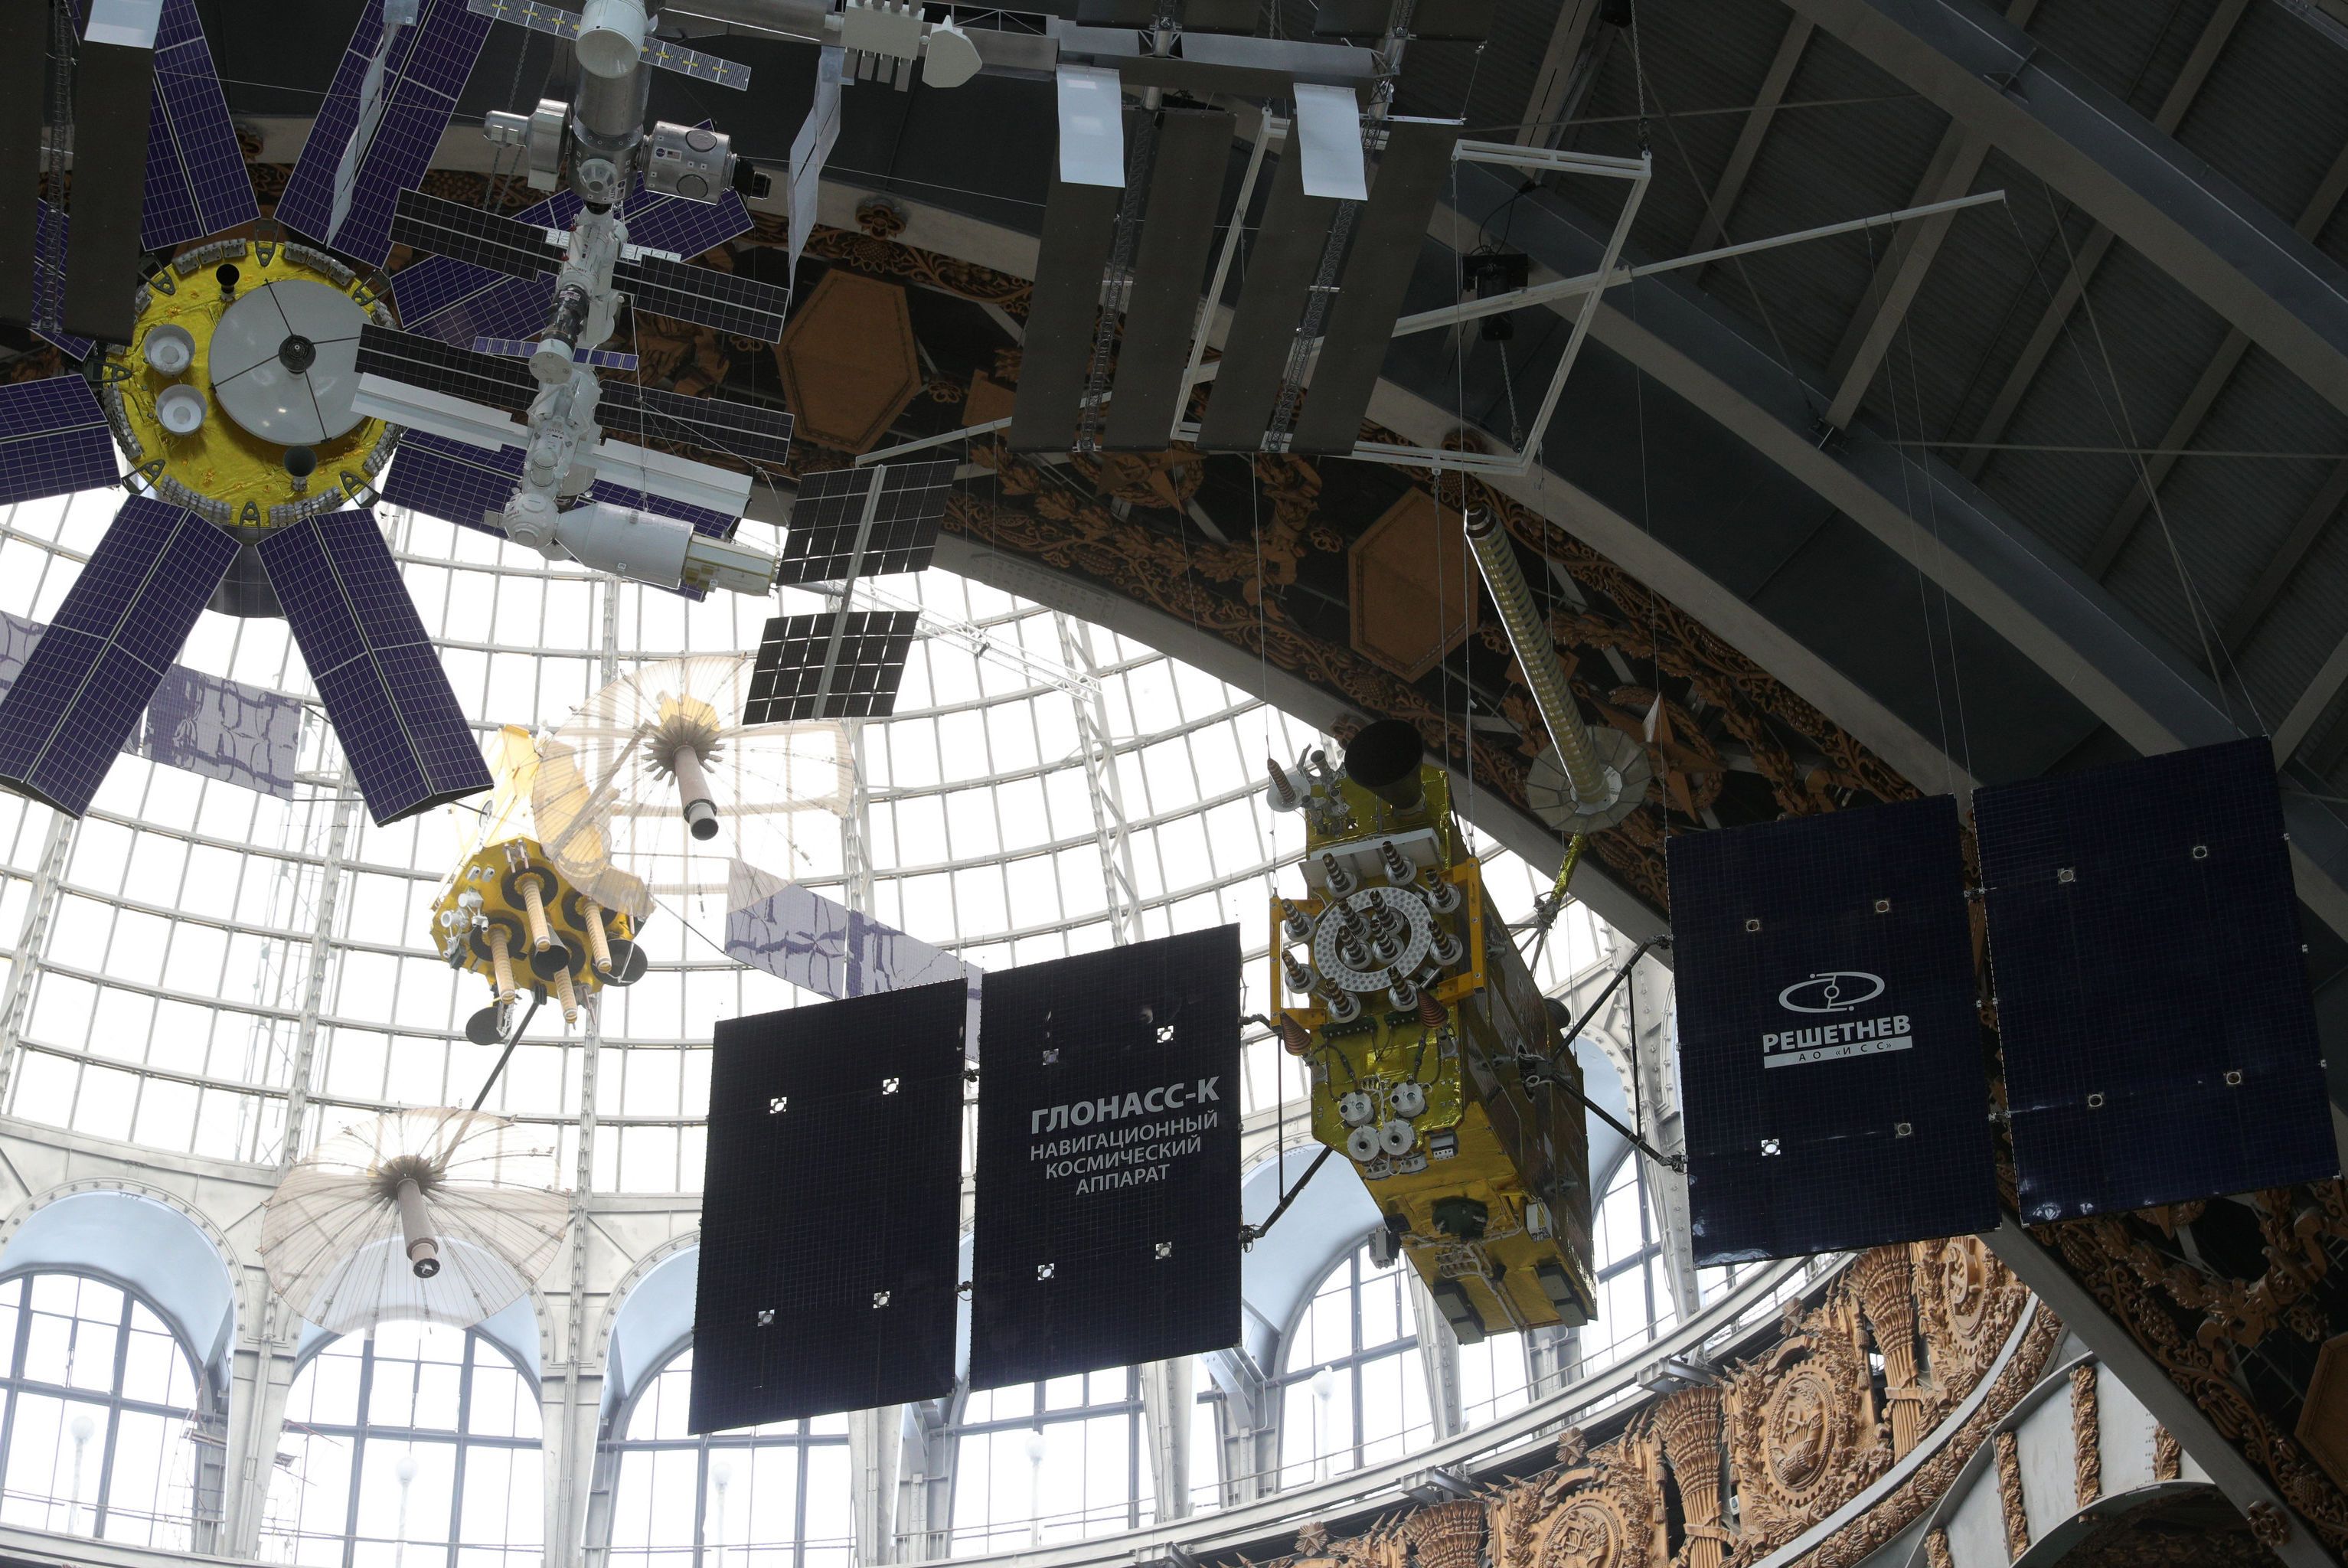 نموذج بالحجم الكامل للمركبة الفضائية Glonass-K (في الخلفية) لنظام الملاحة العالمي غلوناس الروسي في معرض مركز رواد الفضاء والطيران